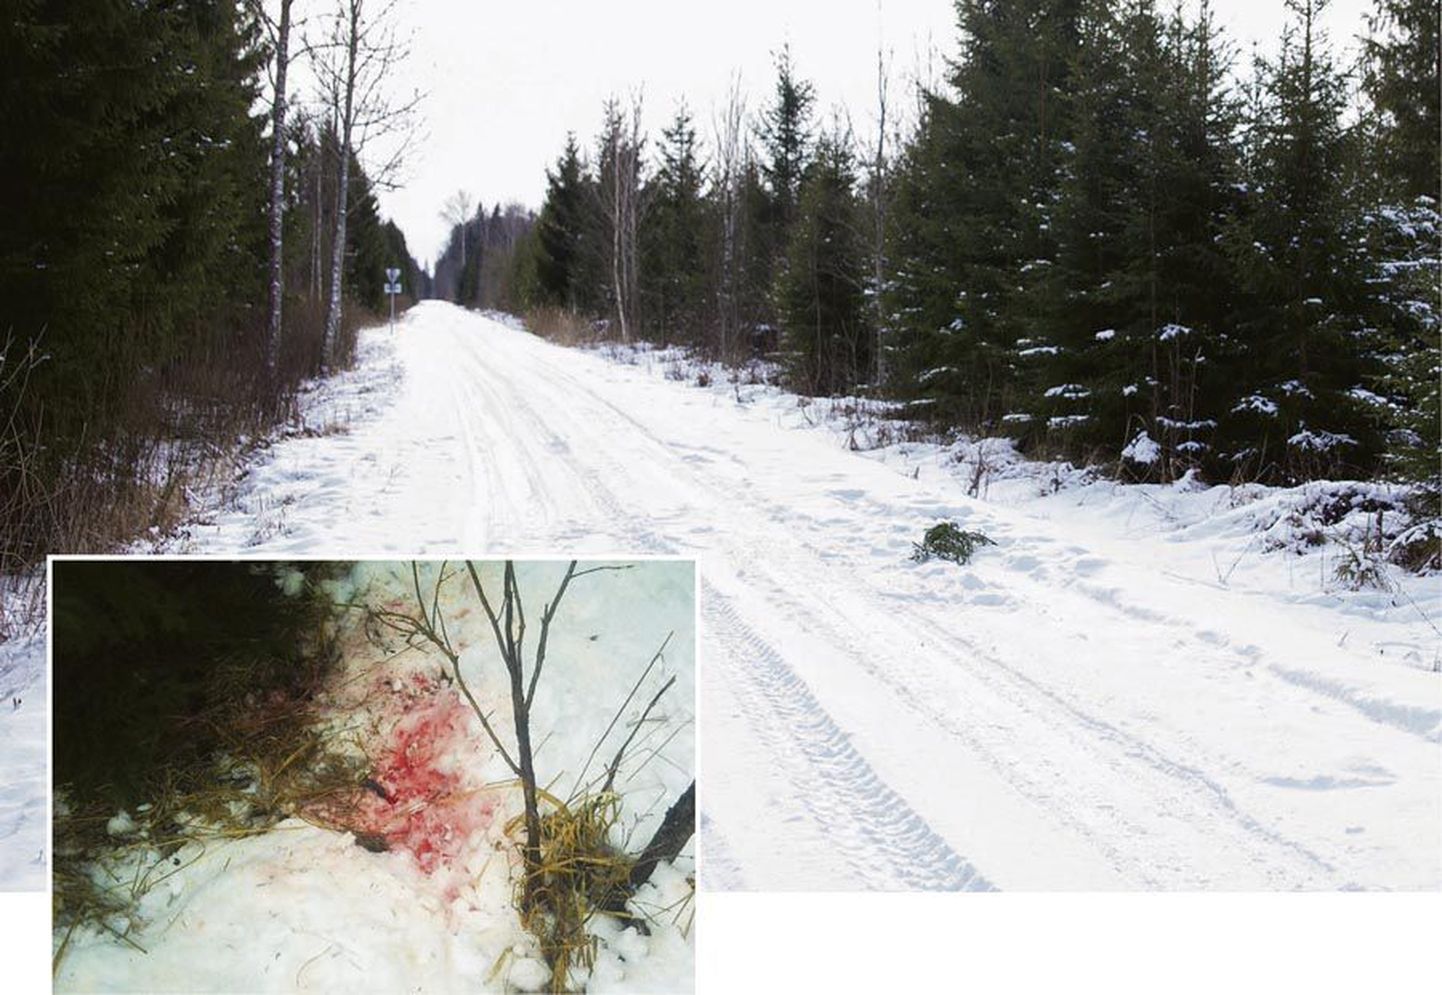 Keskkonnainspektsioon väidab, et tal on aasta tagasi Viljandi vallas Puujala ristmikul toime pandud salaküttimise kohta tugevad tõendid. Nende hulgas on veresegusest lumest võetud DNA-proov, mis kinnitab, et lastud oli hunti.